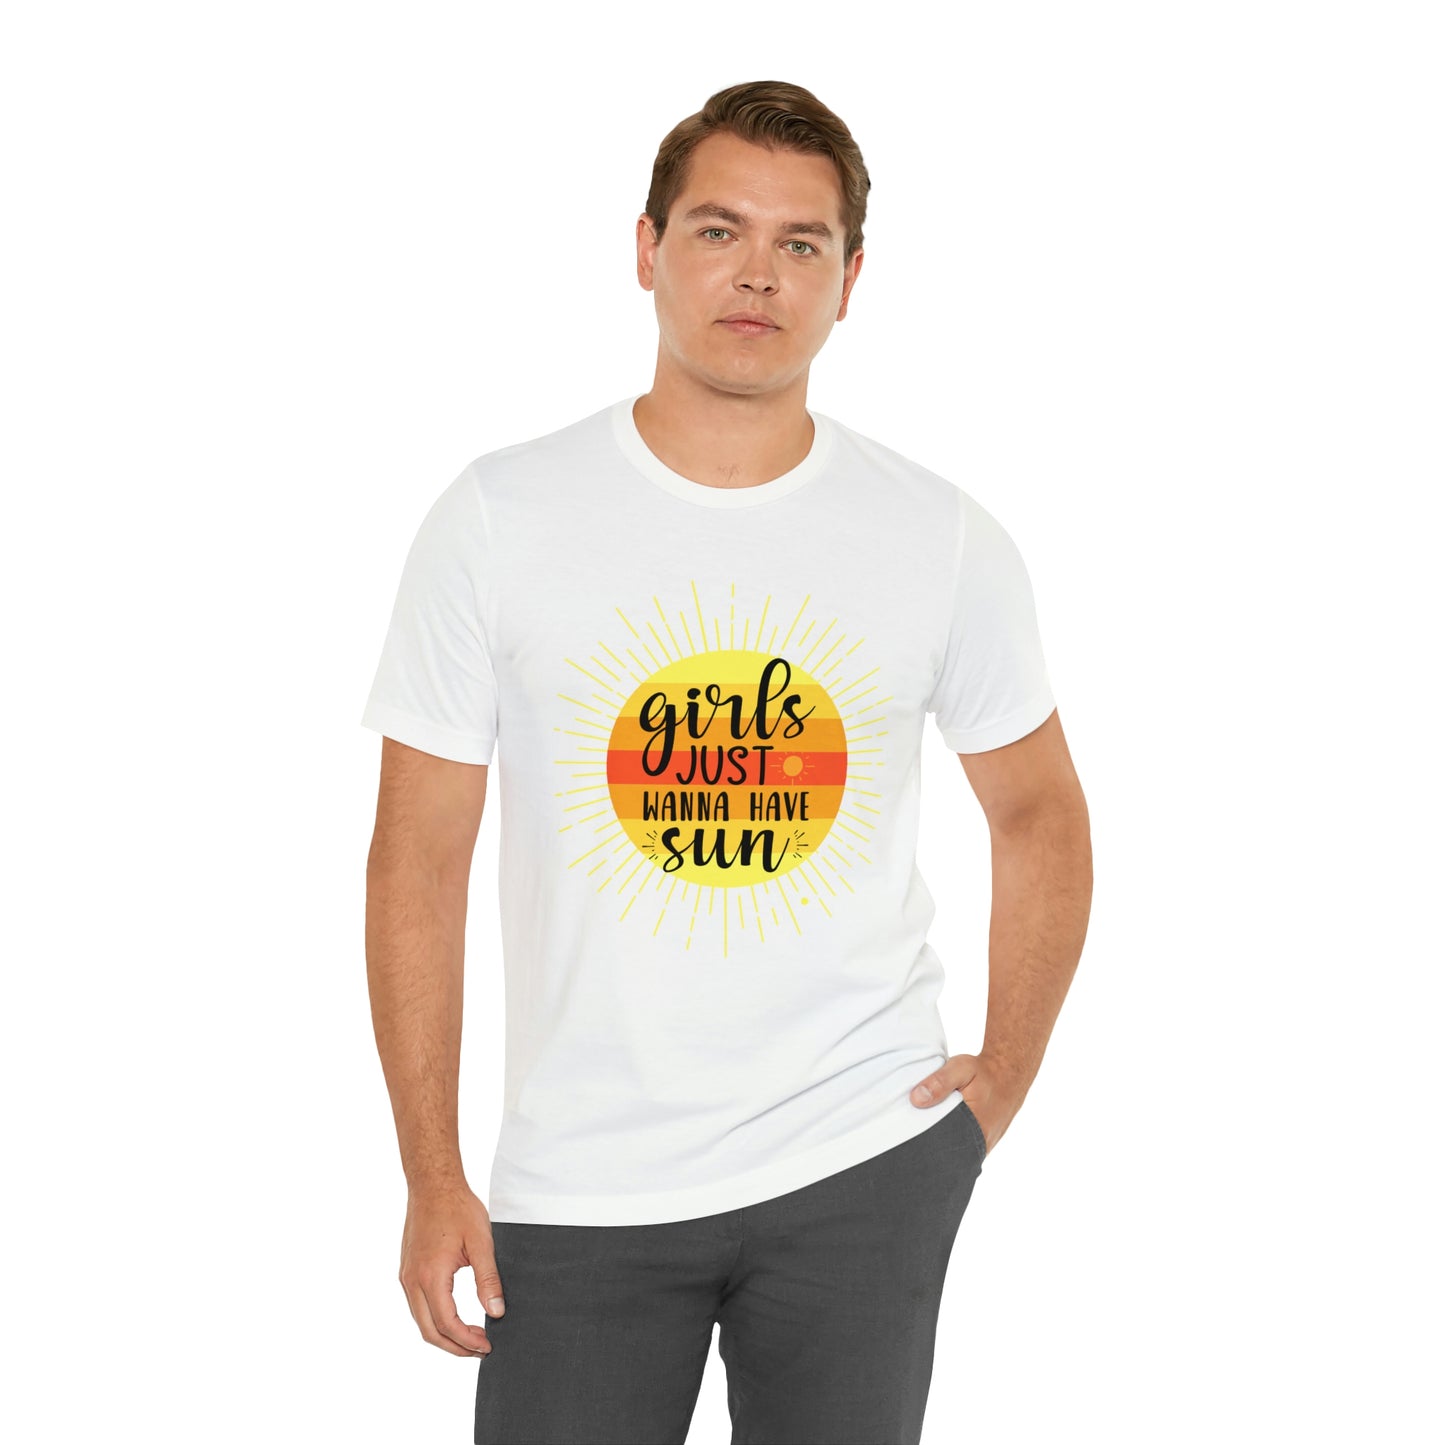 Girls Just Wanna Have Sun T-Shirt,  Unisex Jersey Short Sleeve Tee